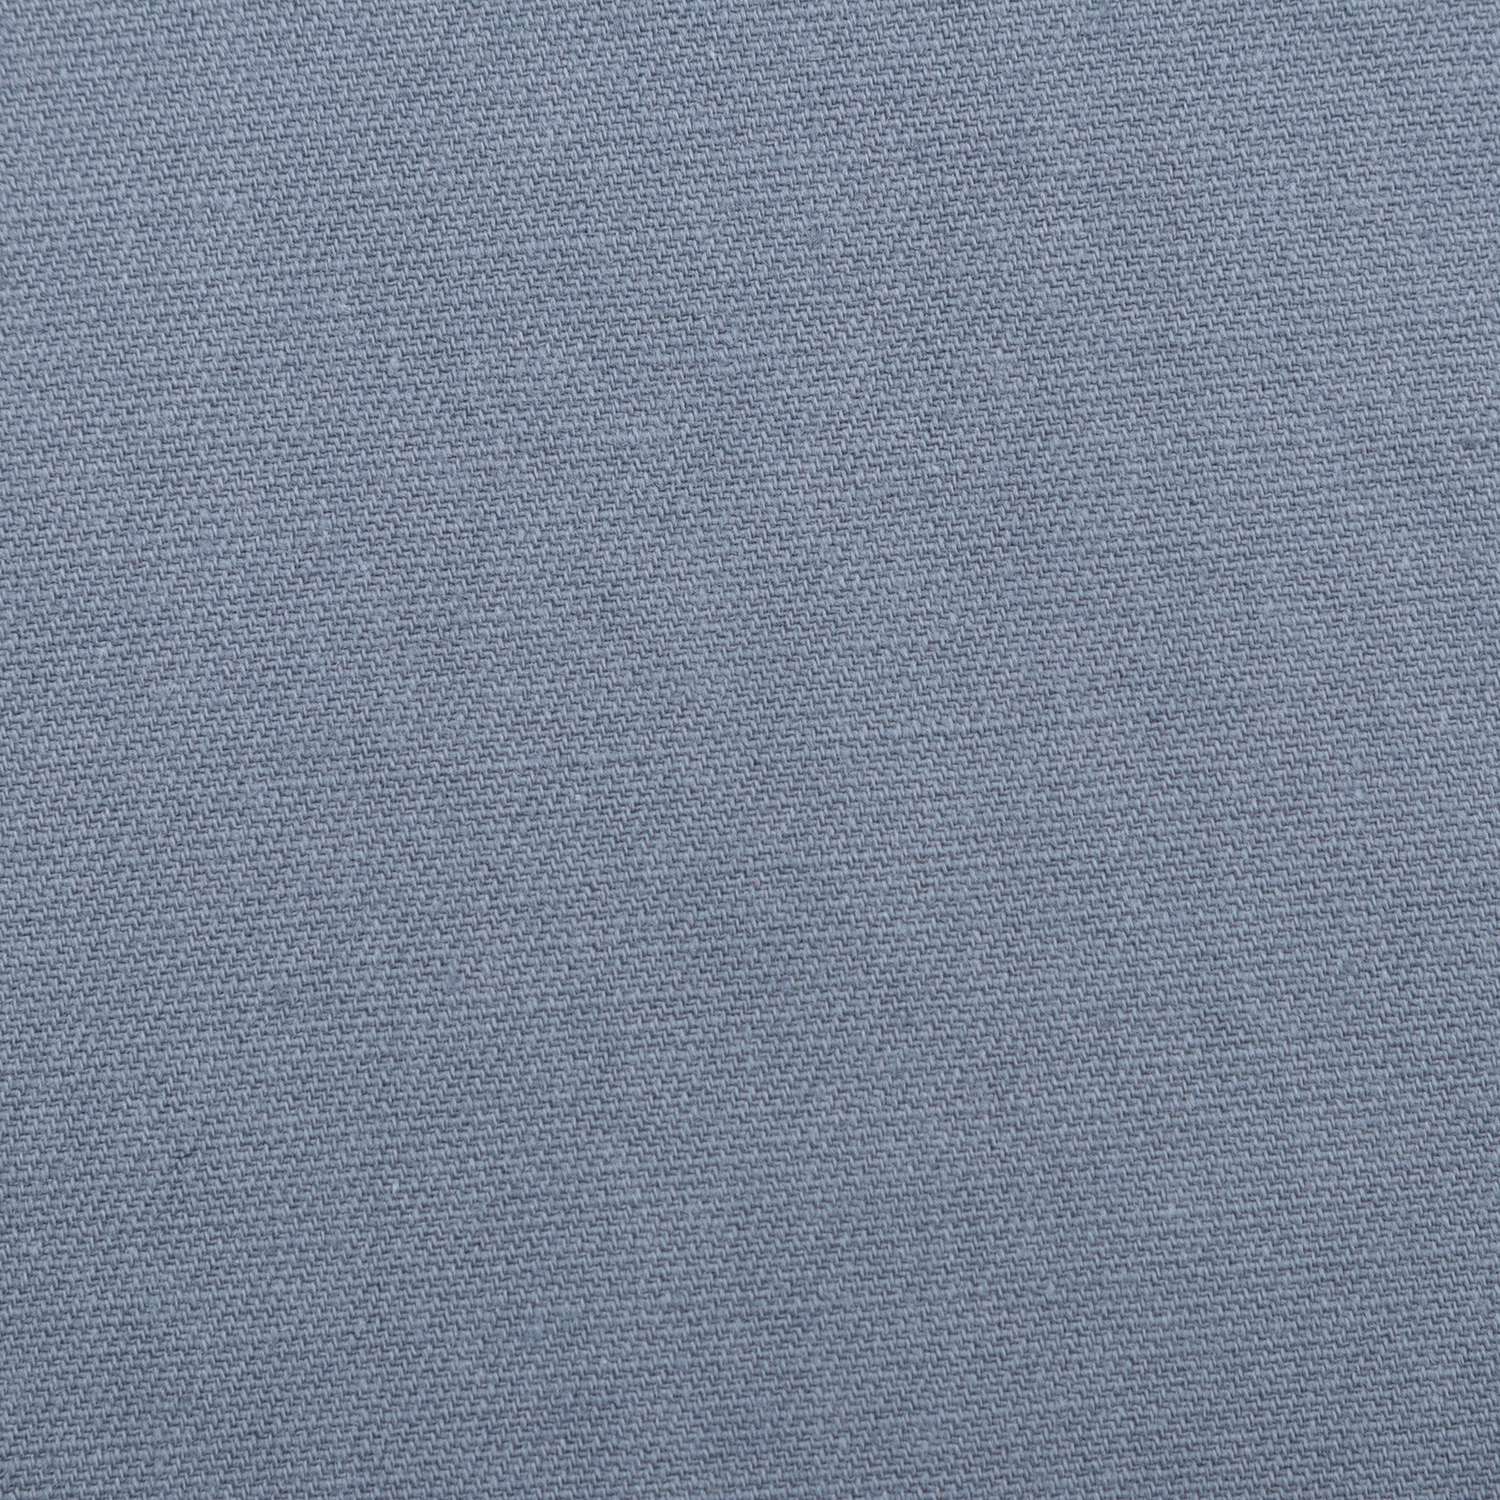 Скатерть Этель синяя 150х180 см саржа - фото 2